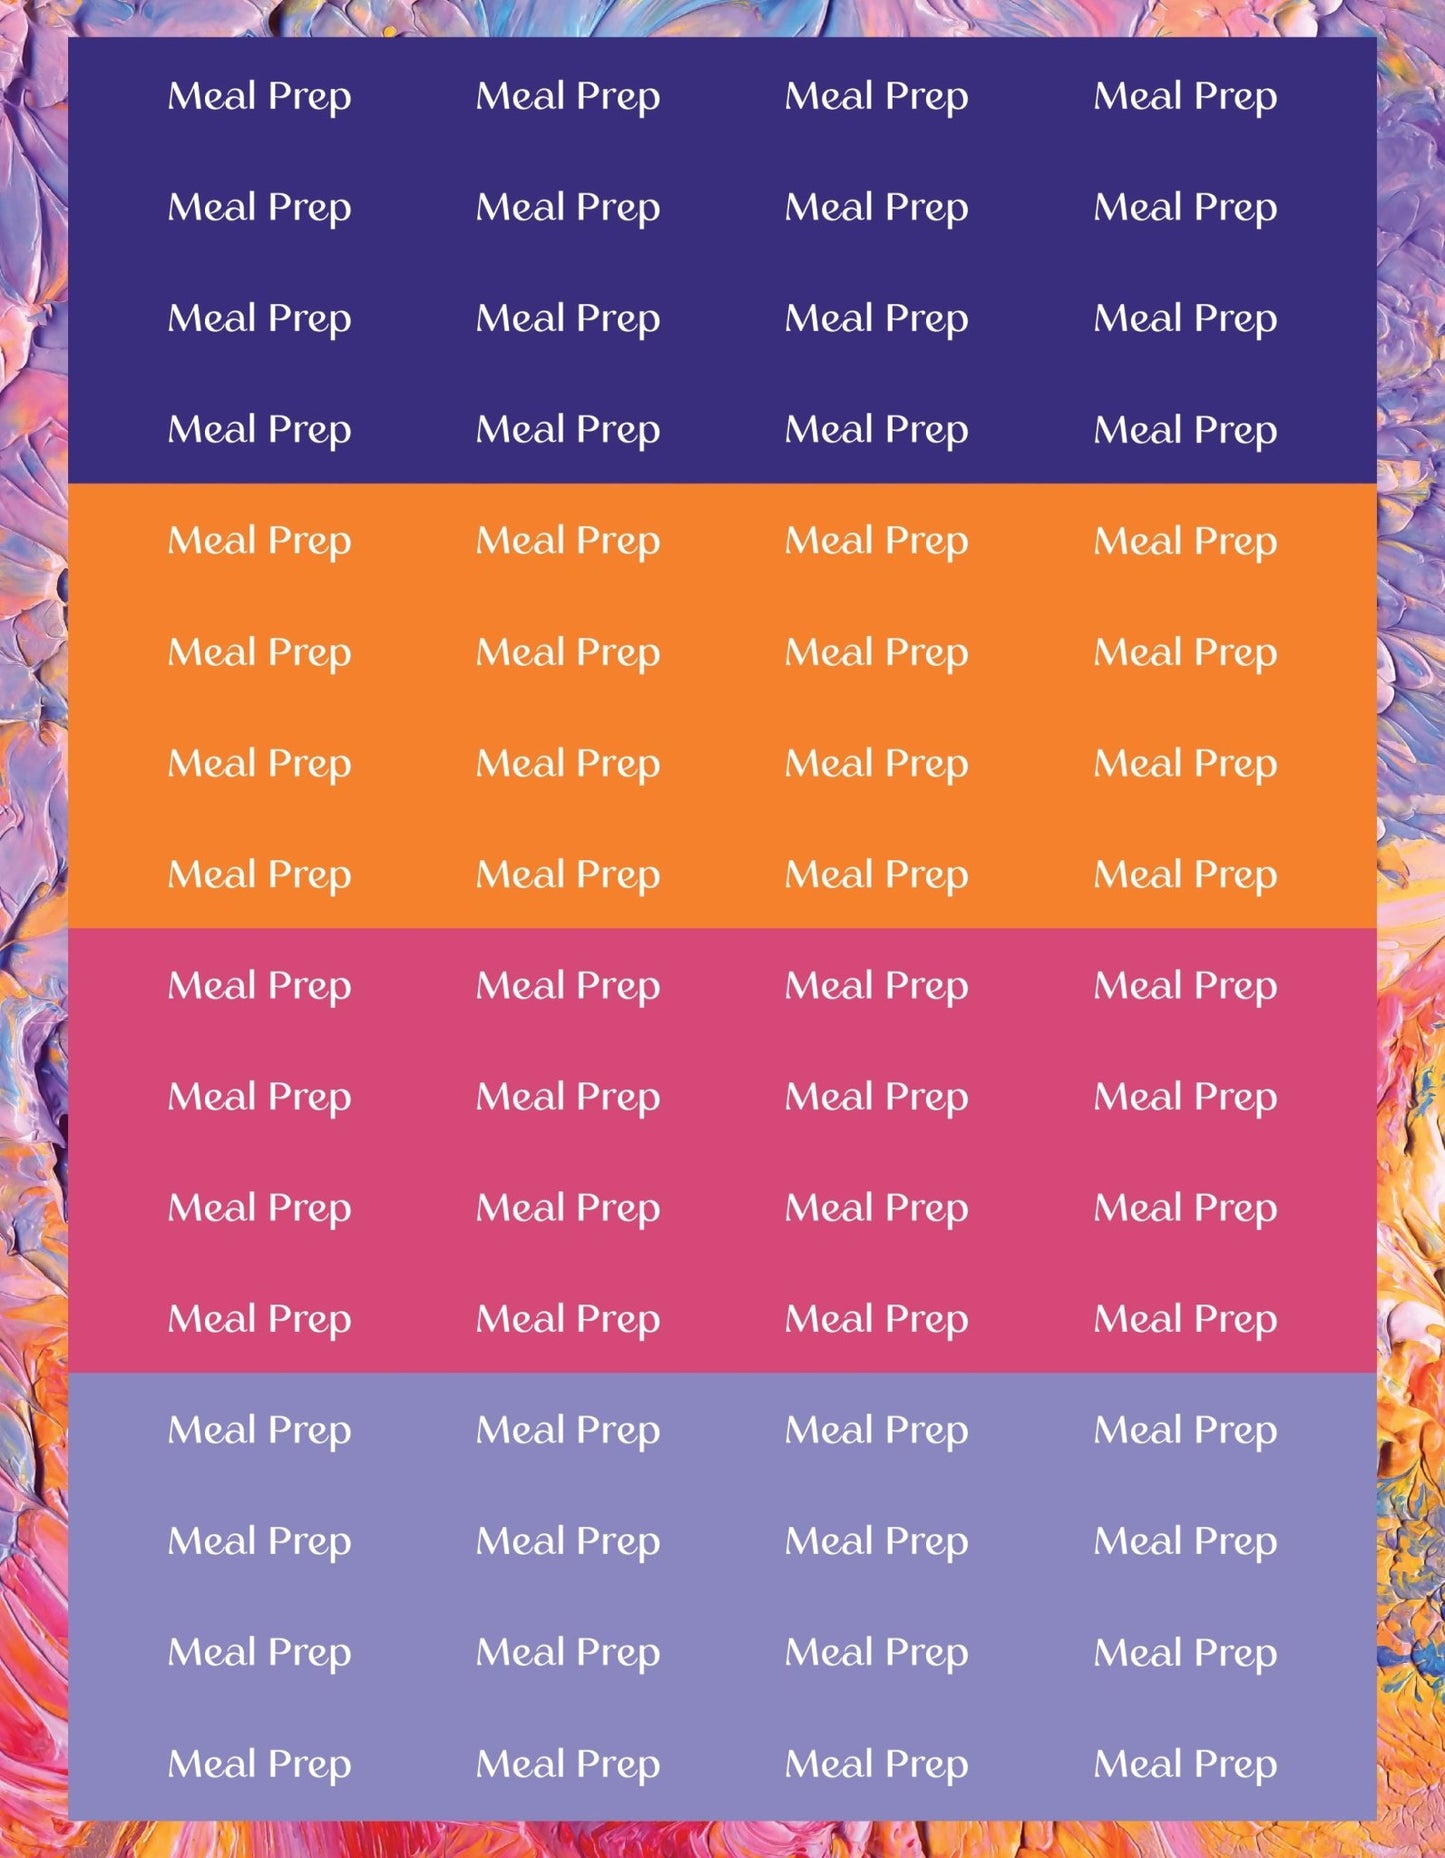 Meal Prep Sticker Sheets - 9 Designs/Colors - Colibri Paper Co